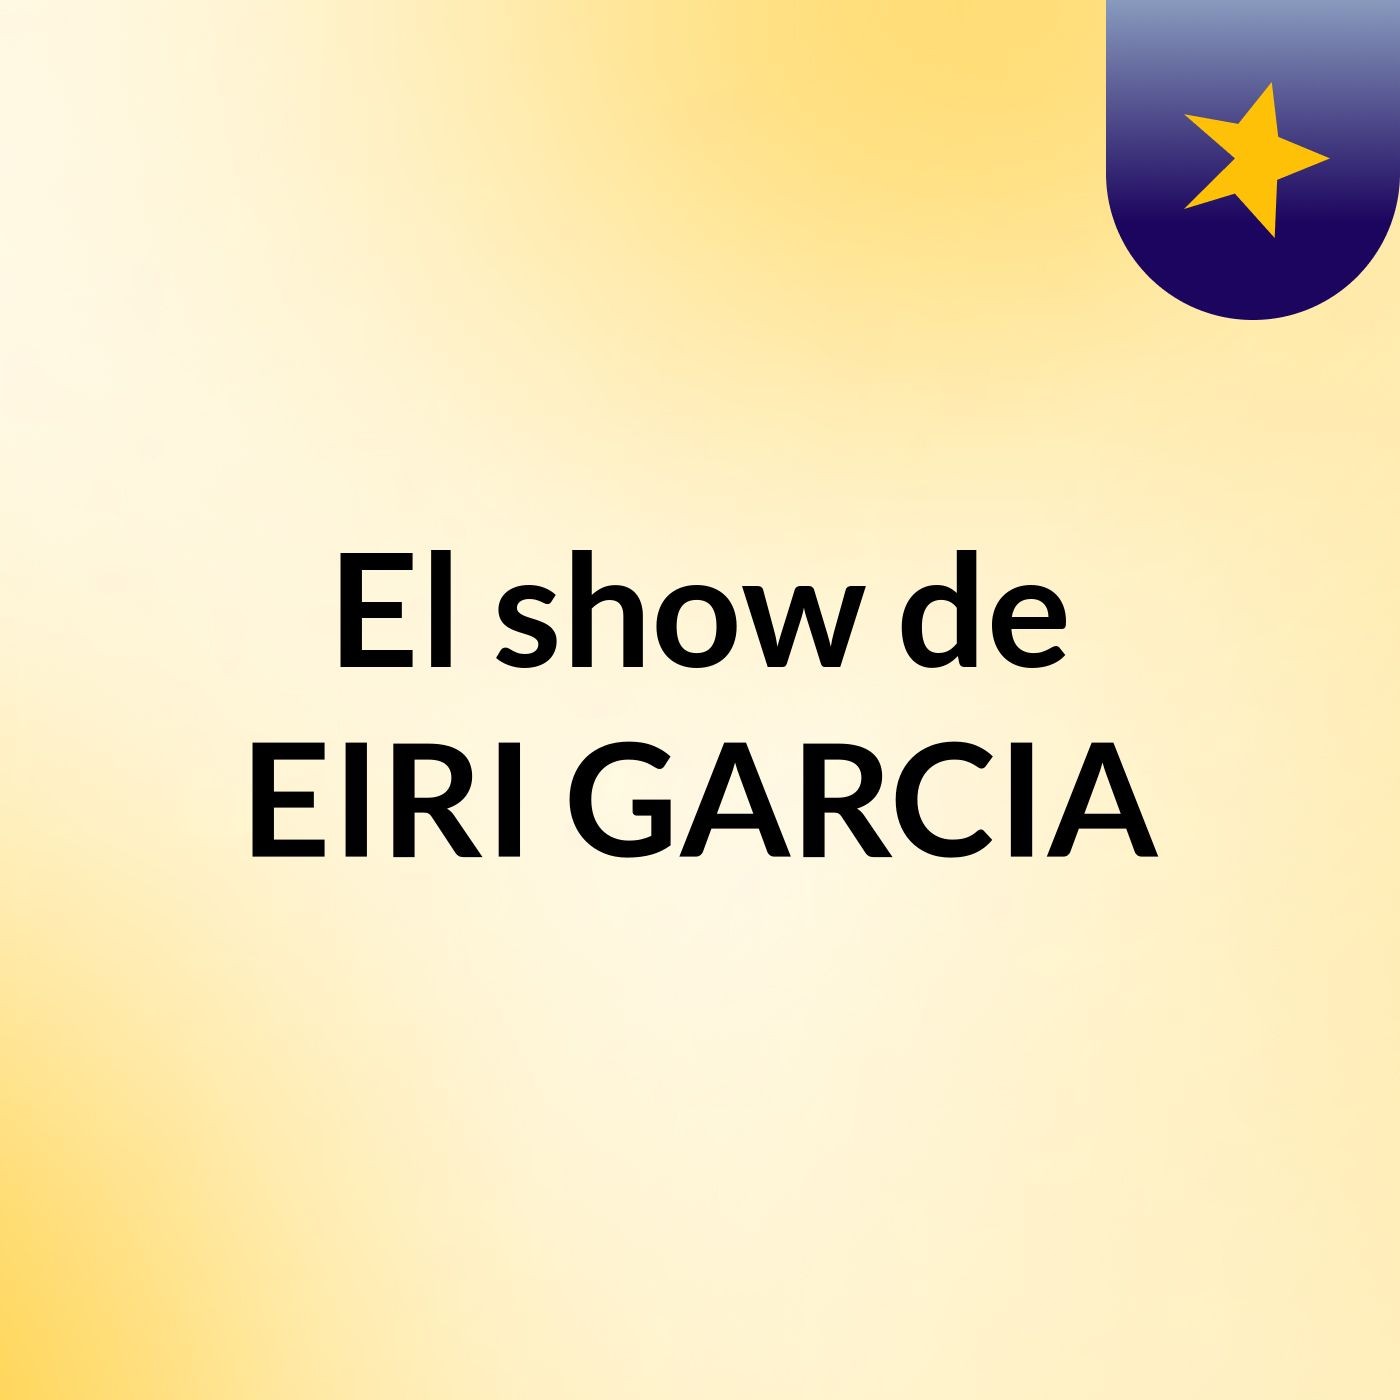 El show de EIRI GARCIA